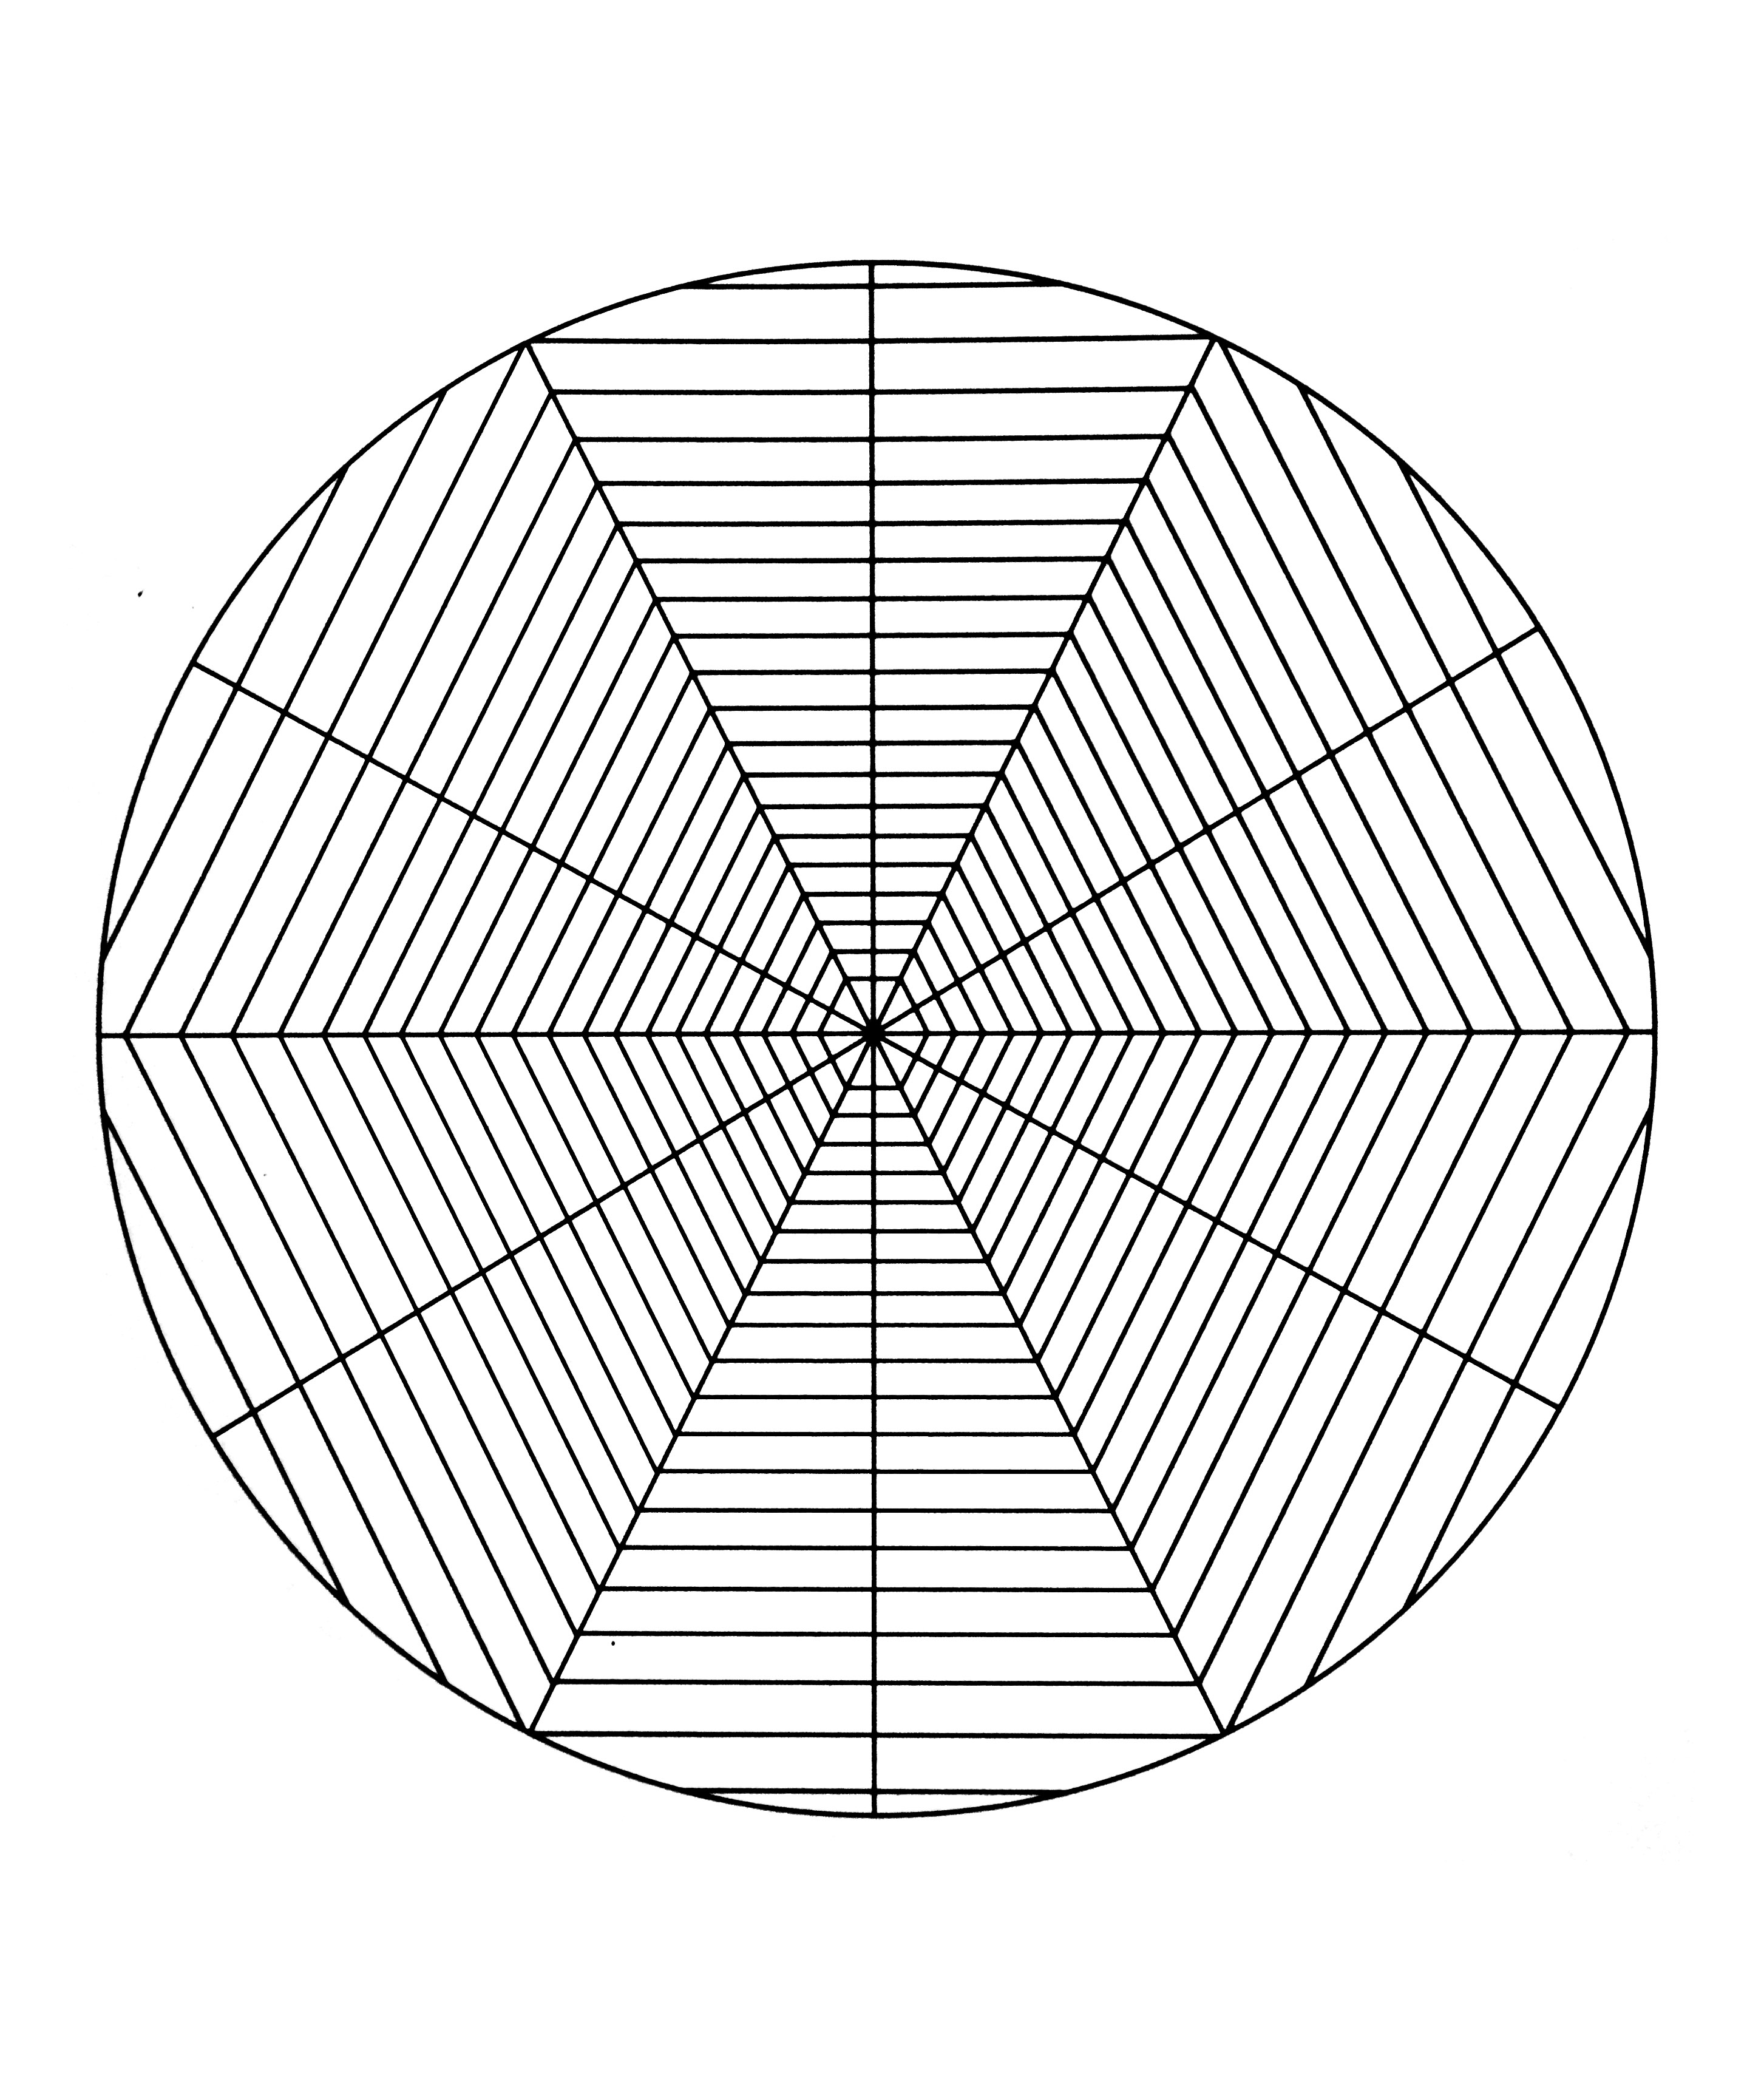 Superbe mandala de forme géométrique (triangle ainsi que plusieurs rectangles à l'intérieur de ceux-là). Assez simple à colorier.